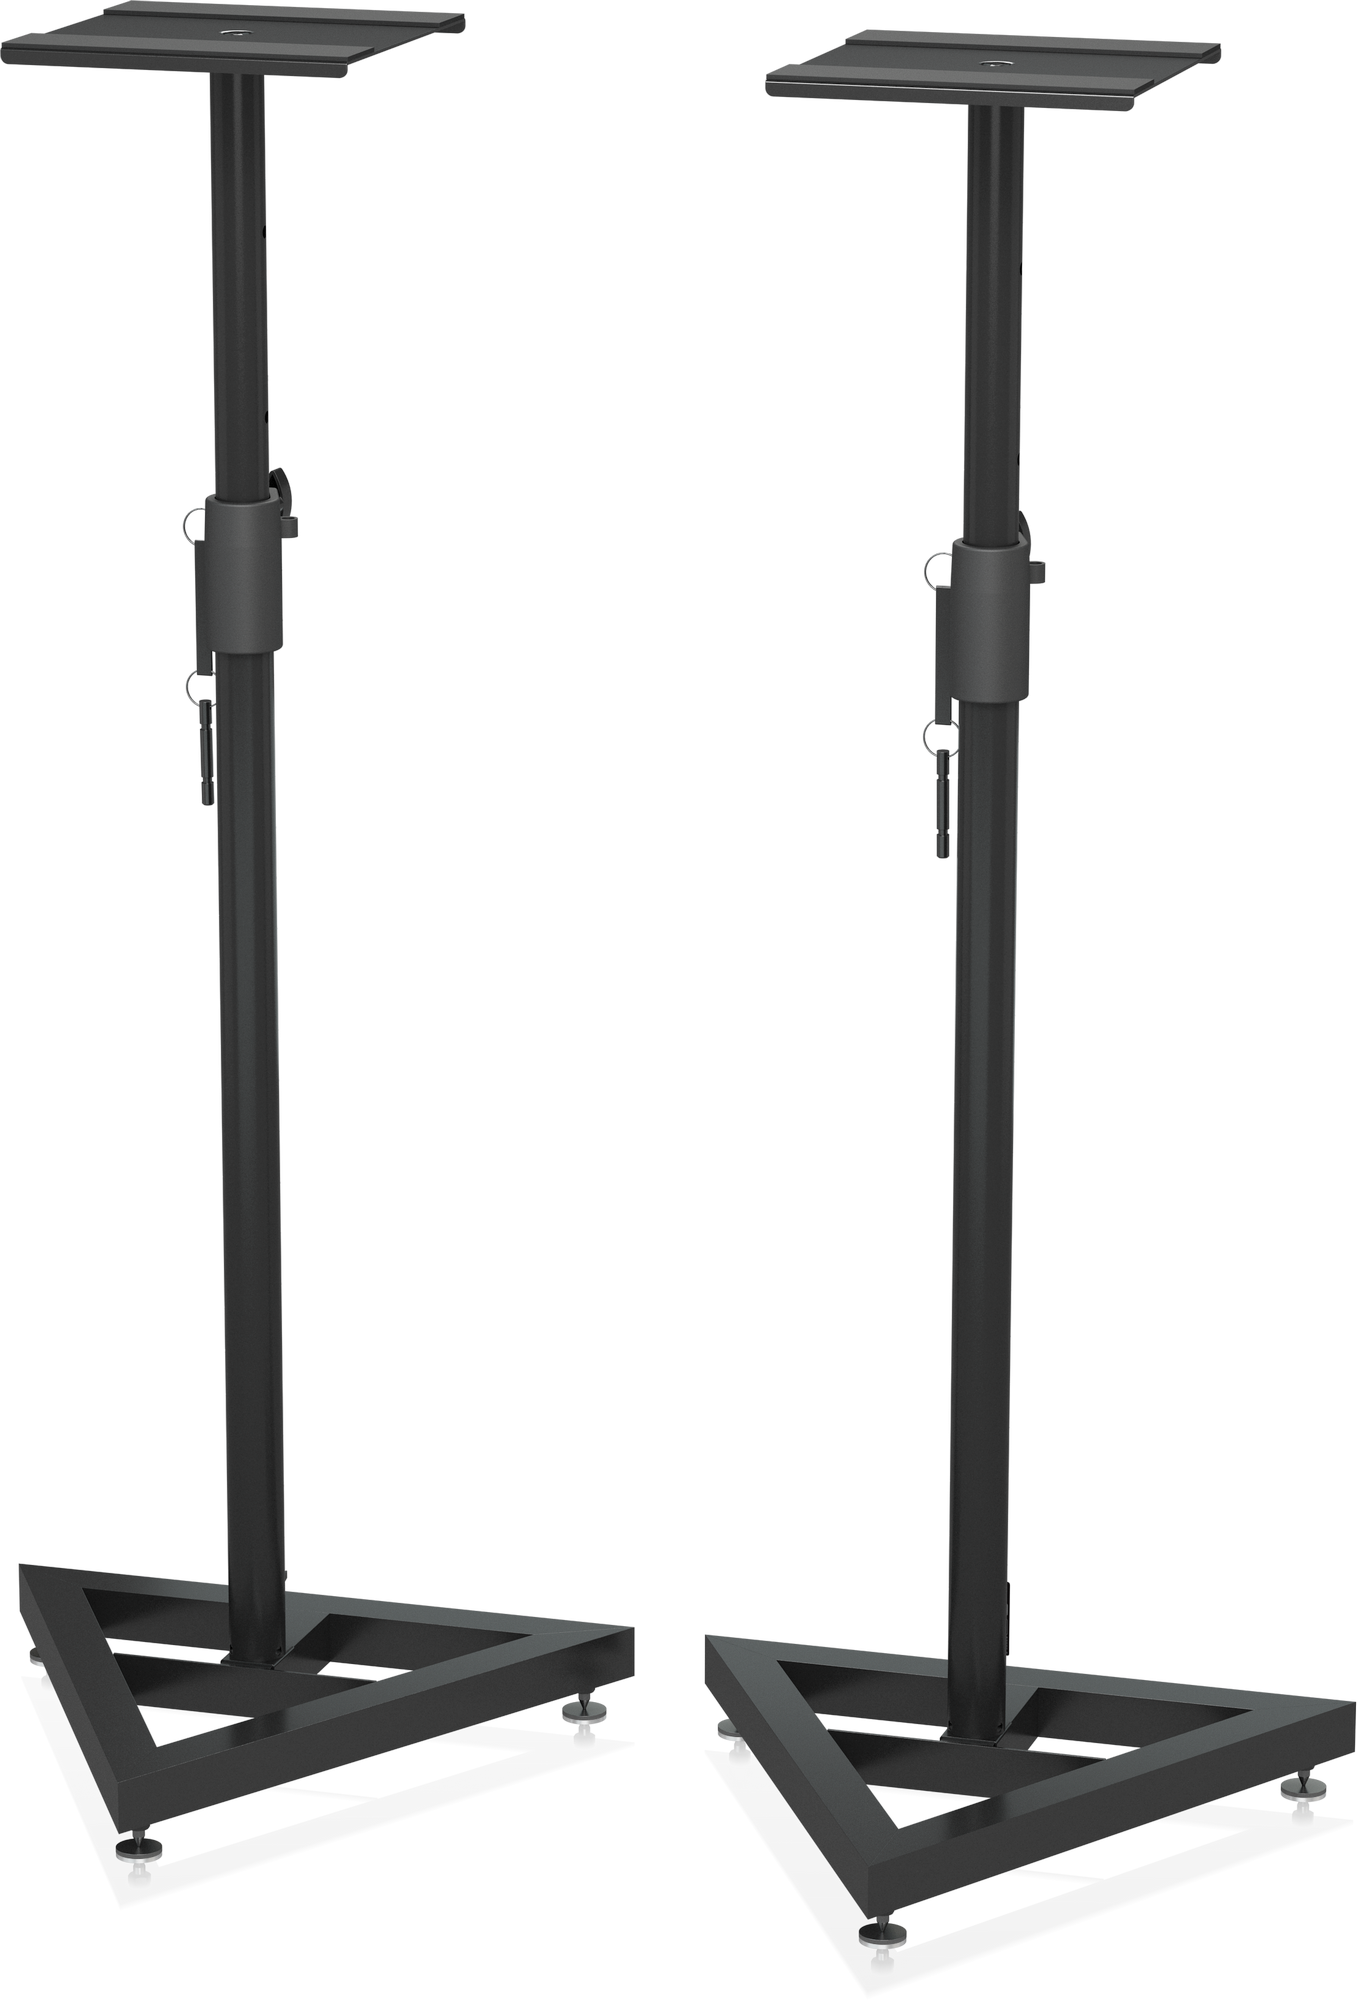 Behringer SM5002 комплект (2 шт.) усиленных стоек для студийных мониторов, высота 93-115 см, нагрузка до 45 кг, цвет чёрный, площадка под монитор 25х